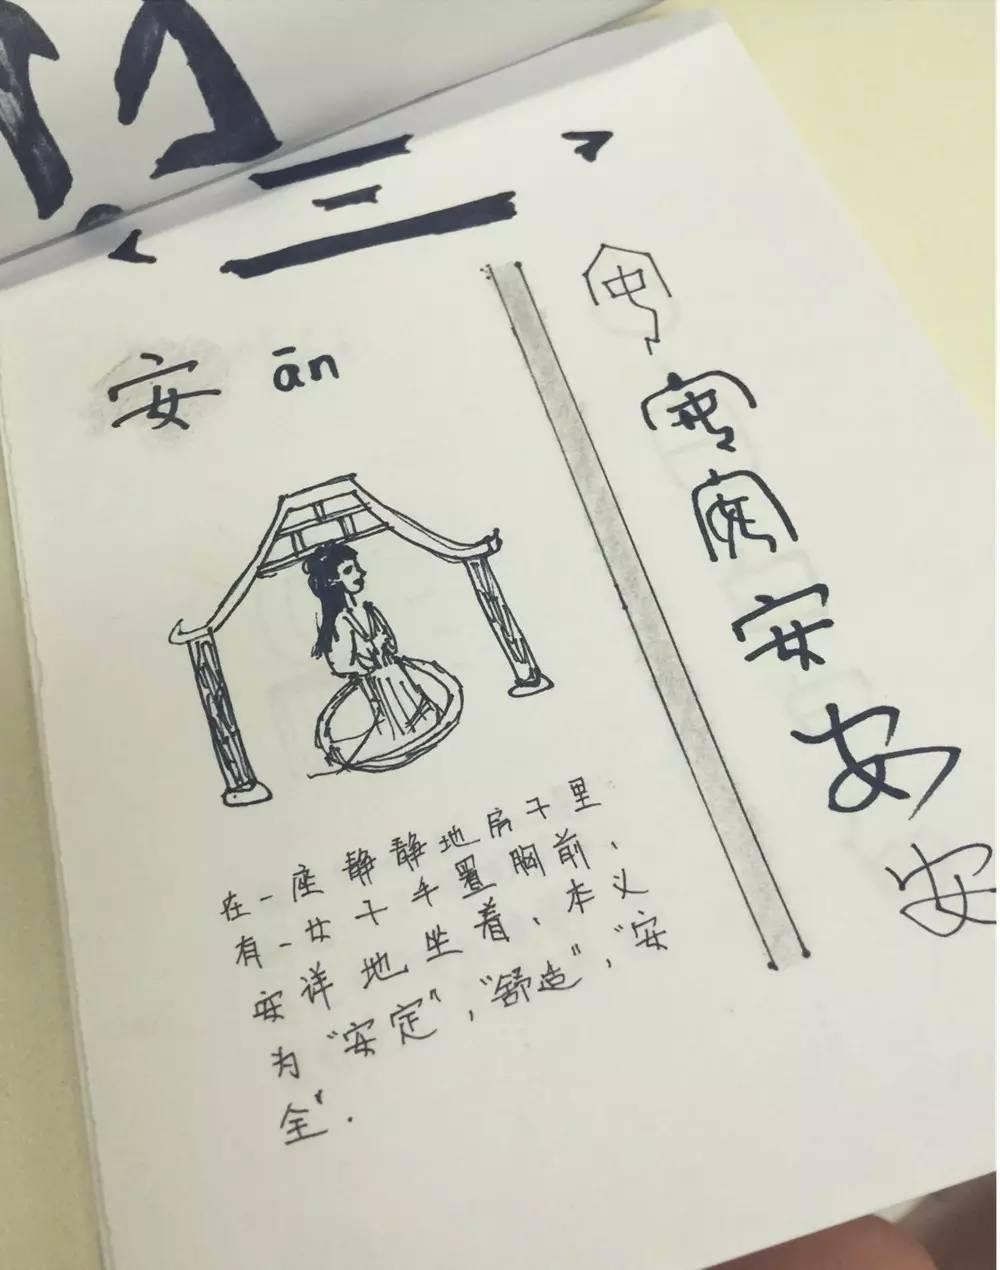 指尖下的汉字之美——国际部MYP最美中文作业图片_1048575